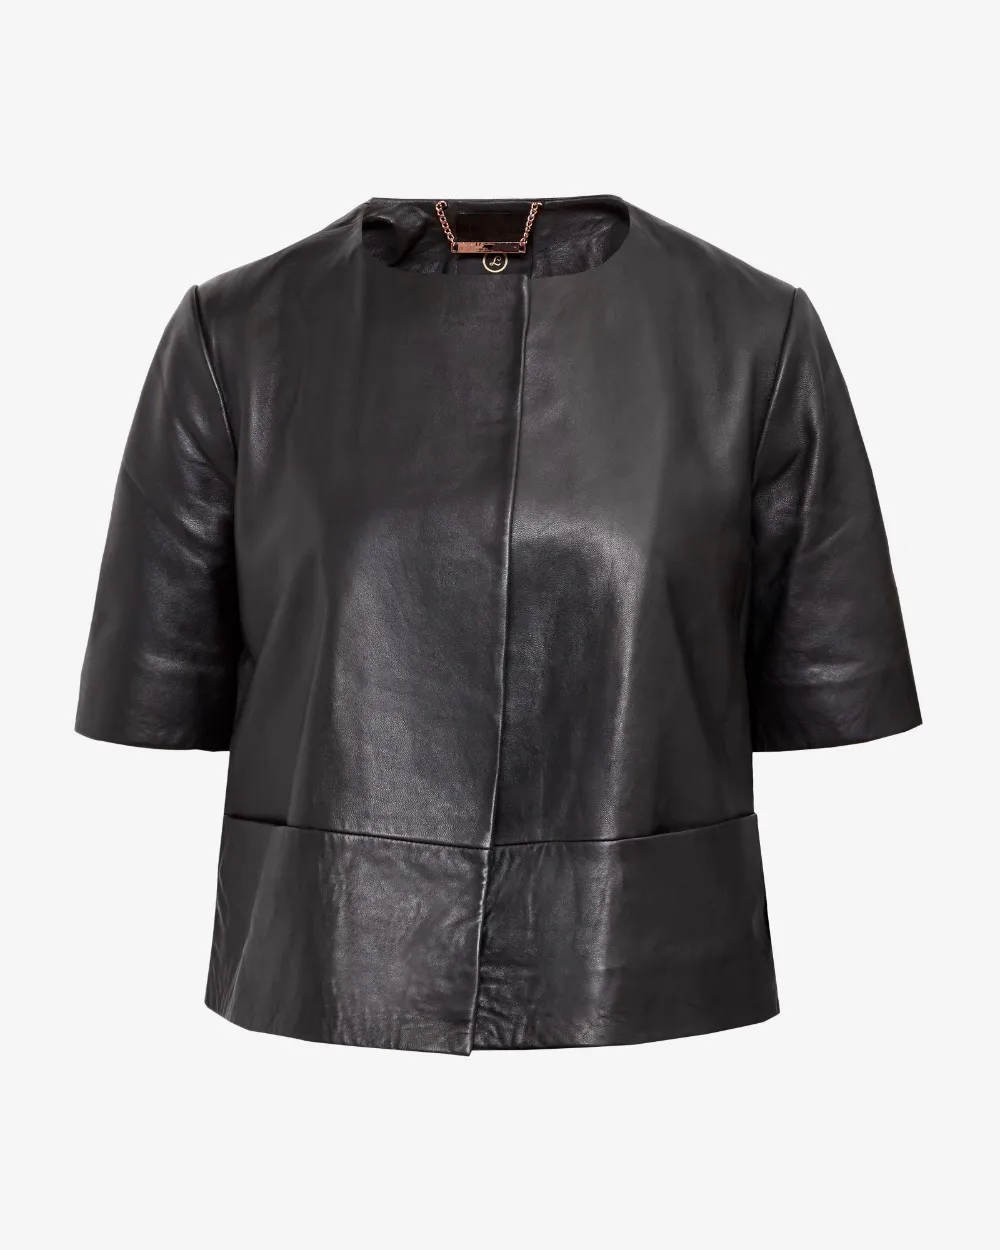 women's short sleeve leather jacket